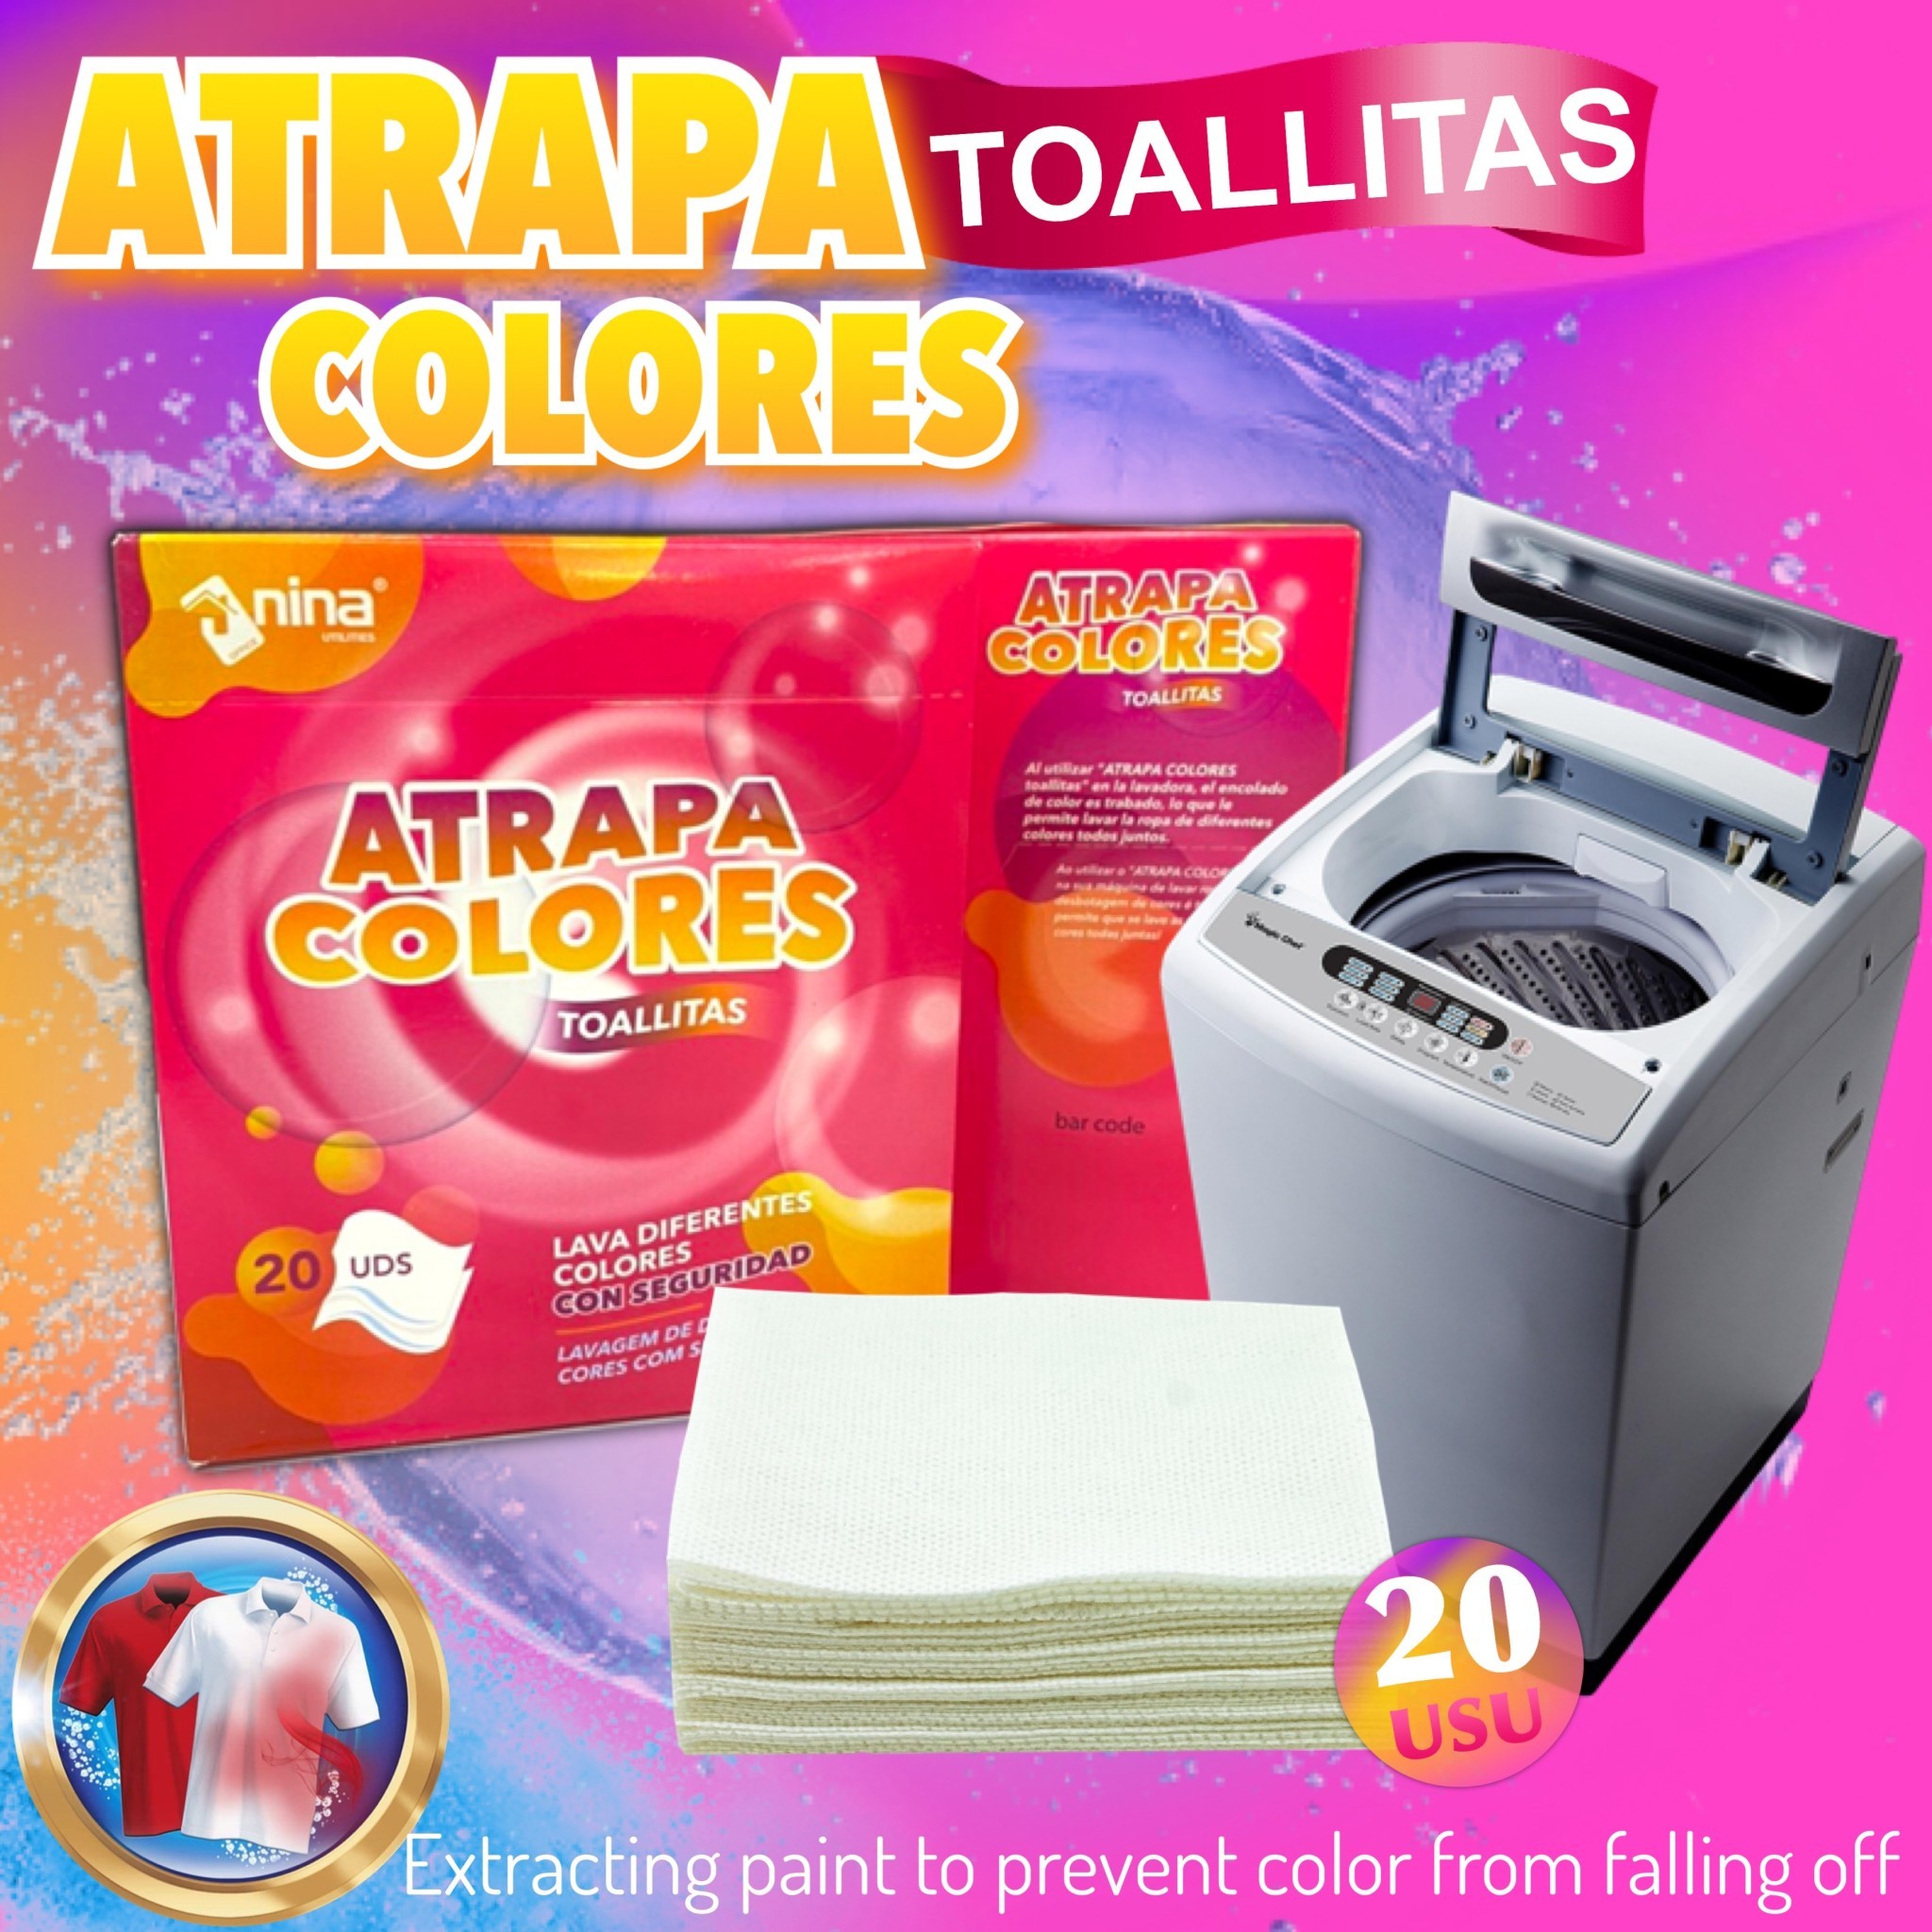 แผ่นซักผ้าดูดซับสีกันสีตกใส่ผ้า แผ่นซักผ้าสีตก แผ่นซักผ้า แผ่นกันสีตก แผ่นซับกันสีตก แผ่นกันผ้าสีตก 1กล่อง มี 20แผ่น